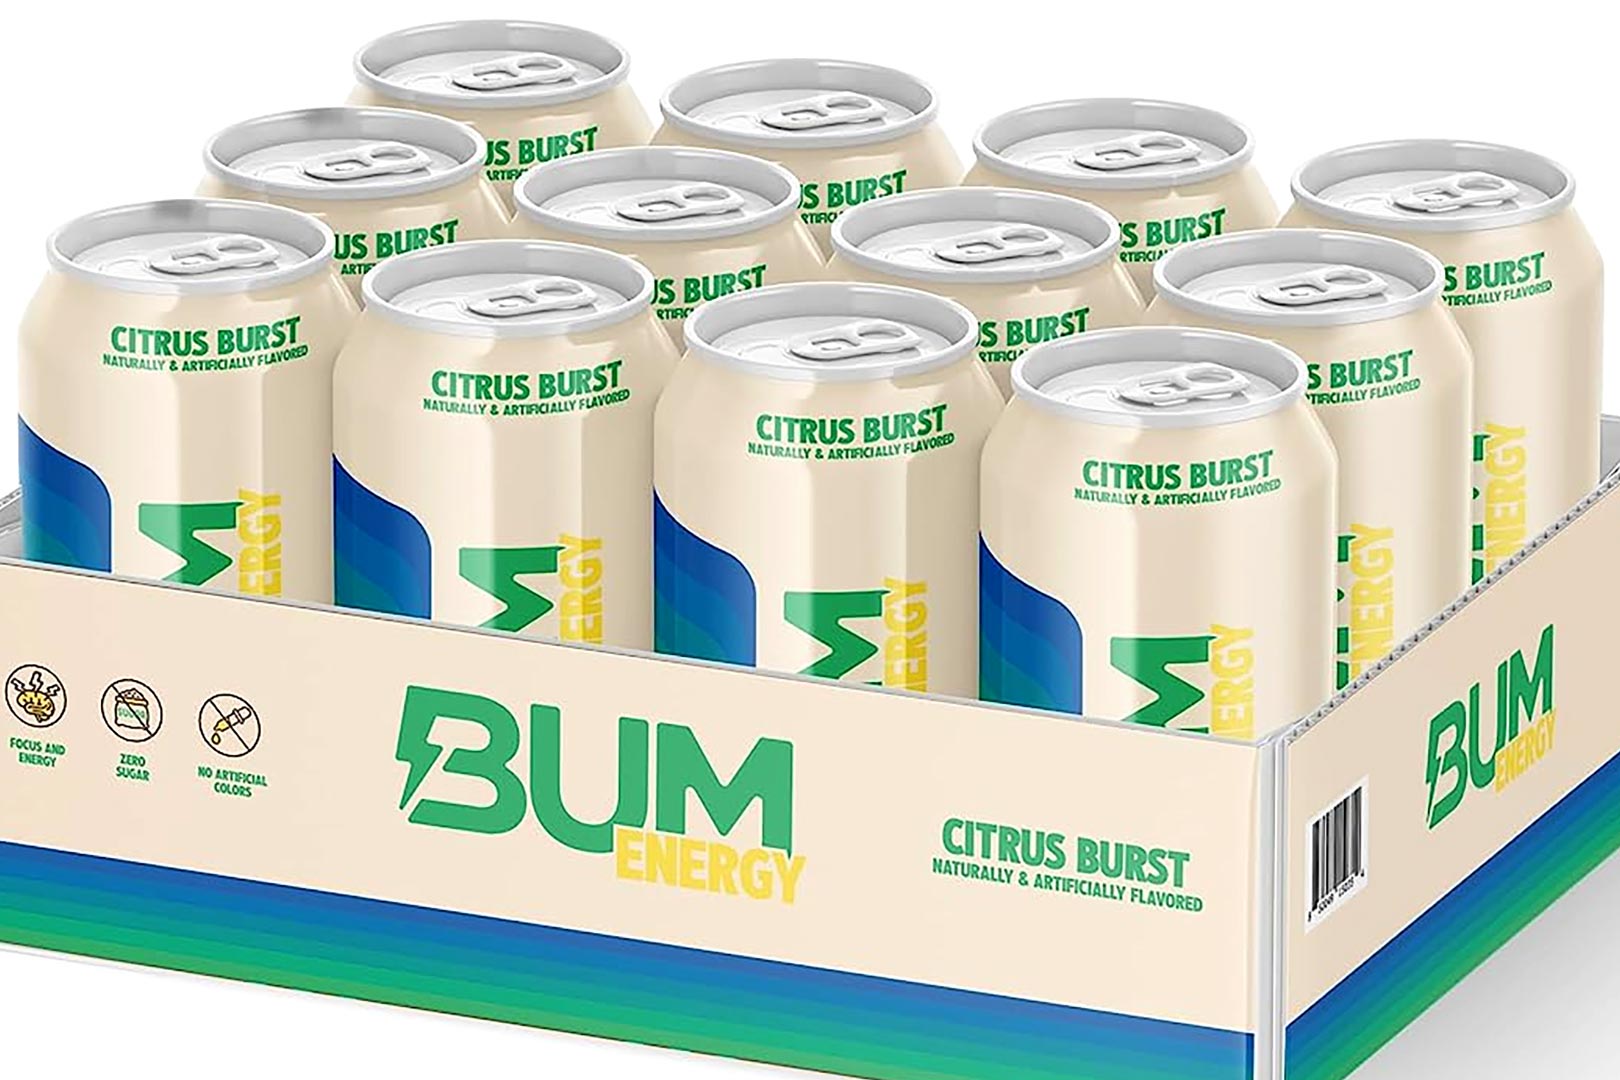 Citrus Burst Bum Energy Drink